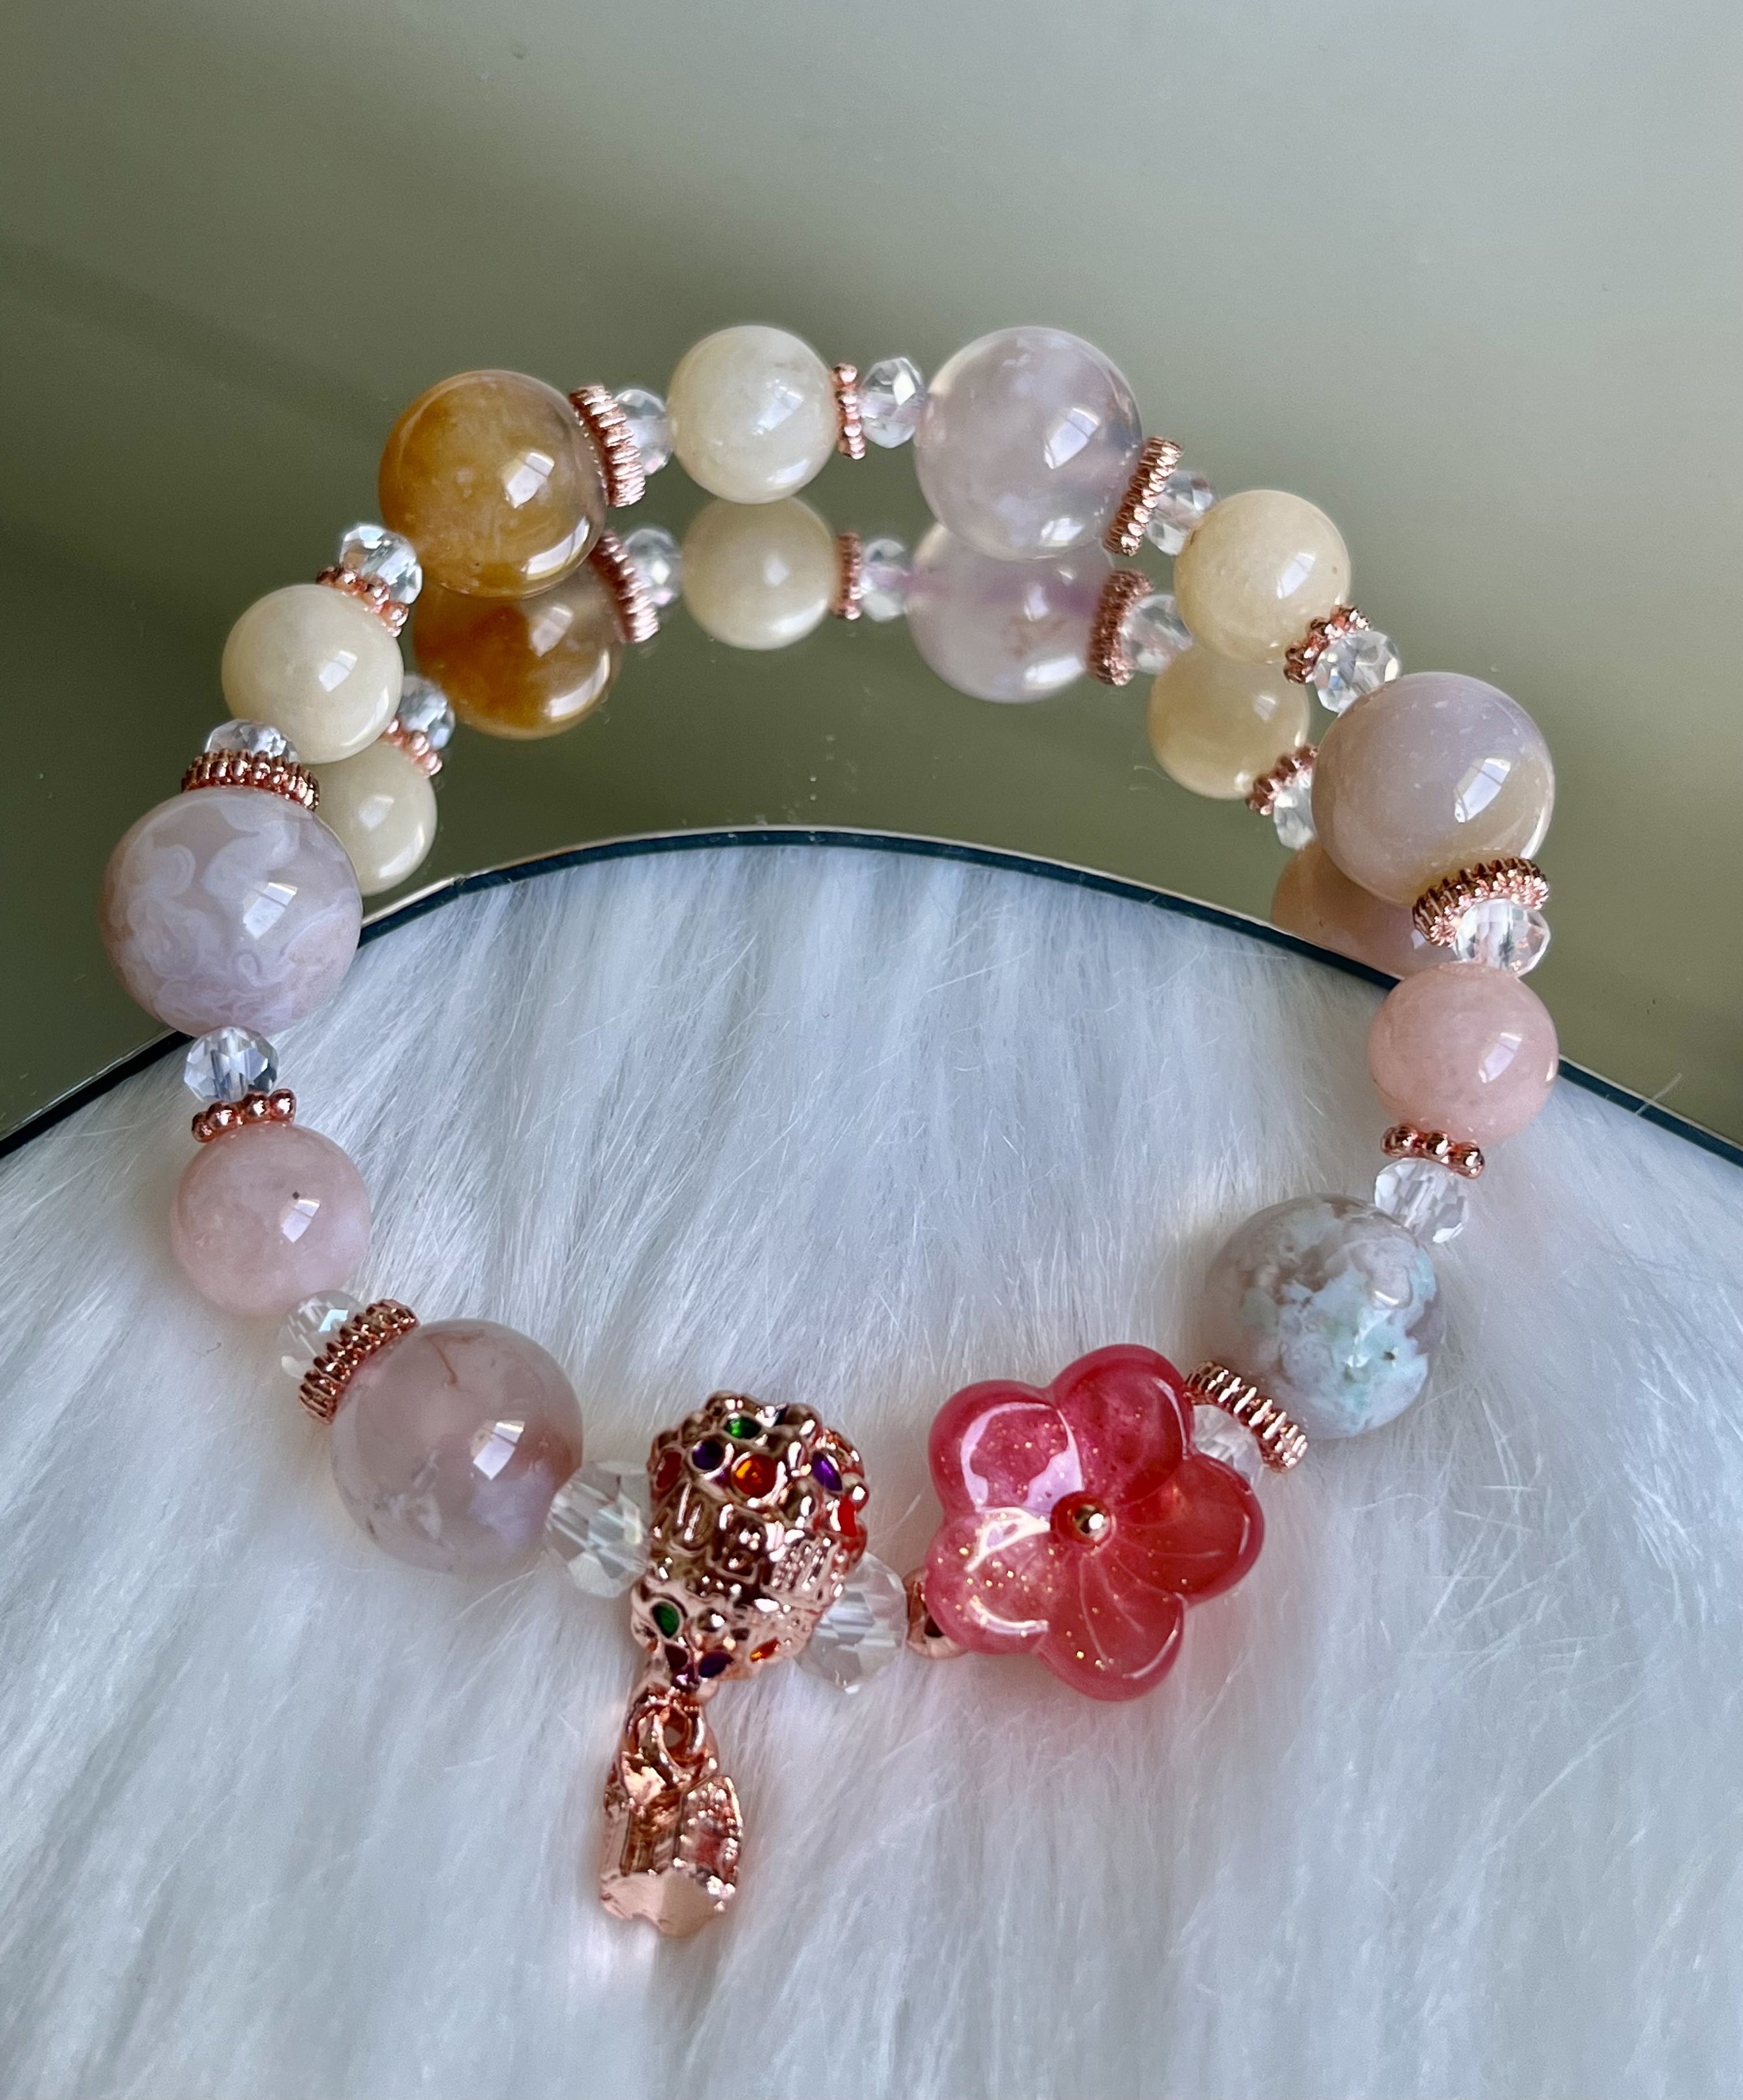 Clear Quartz Gemstone Bracelet 8mm Gemstone Beads Bracelet Morganite Bracelet Cherry Blossom Agate Bracelet SakuraFlower Agate